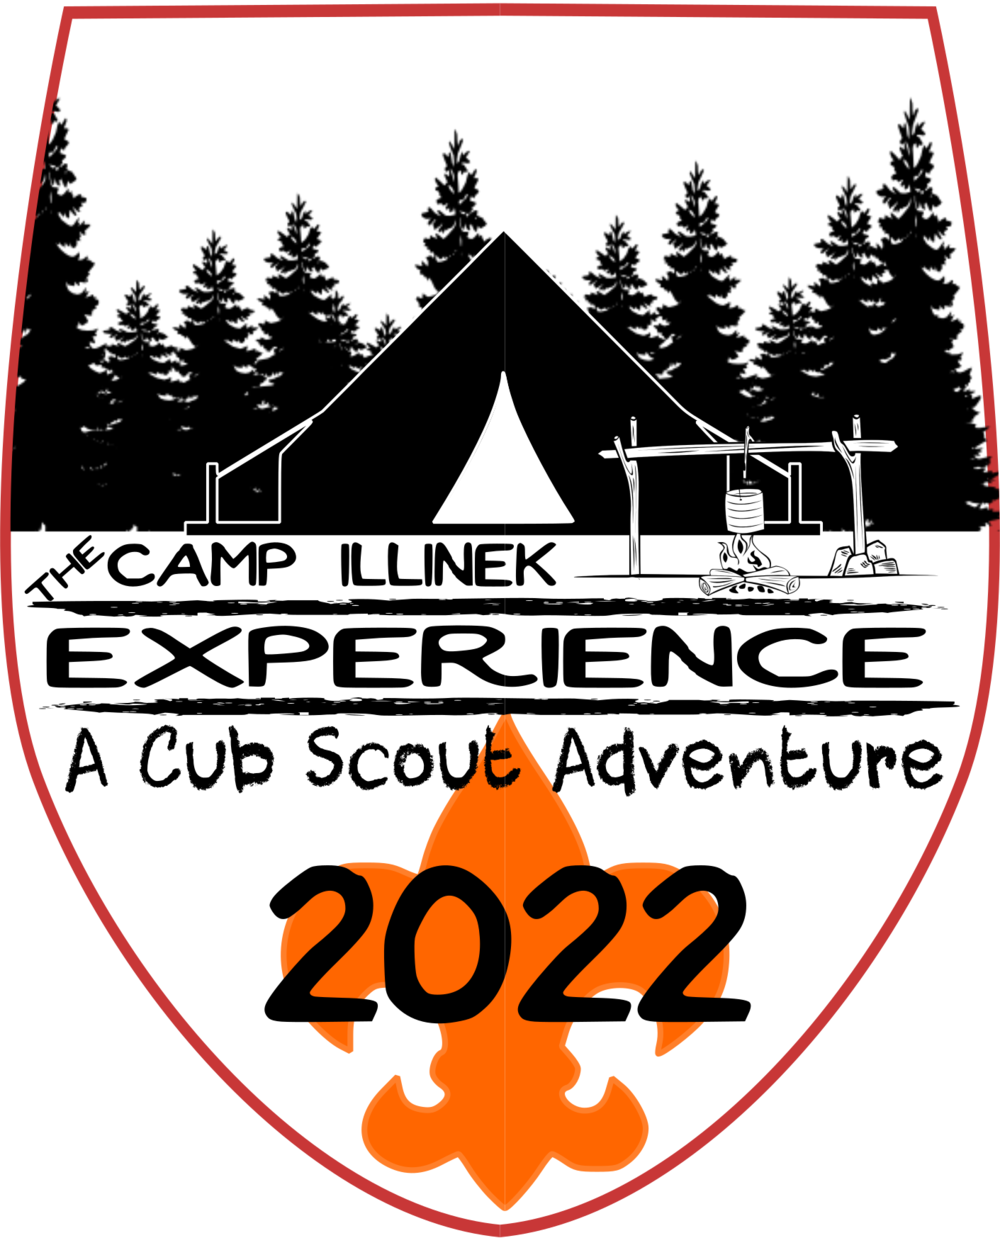 Cub Scouting Adventures